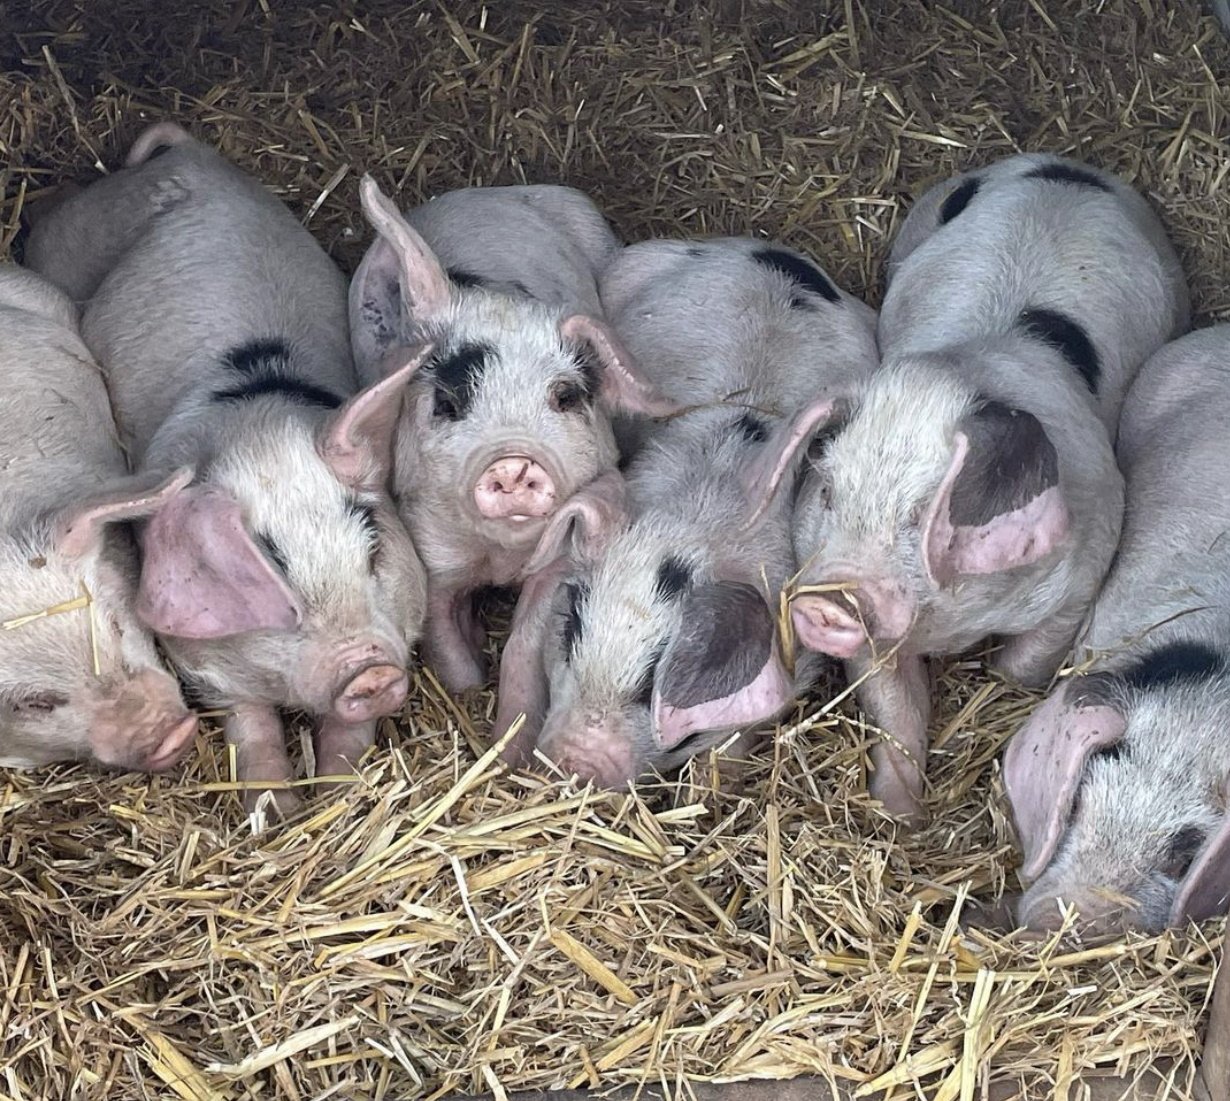 Plumphill Farm Pigs.jpg